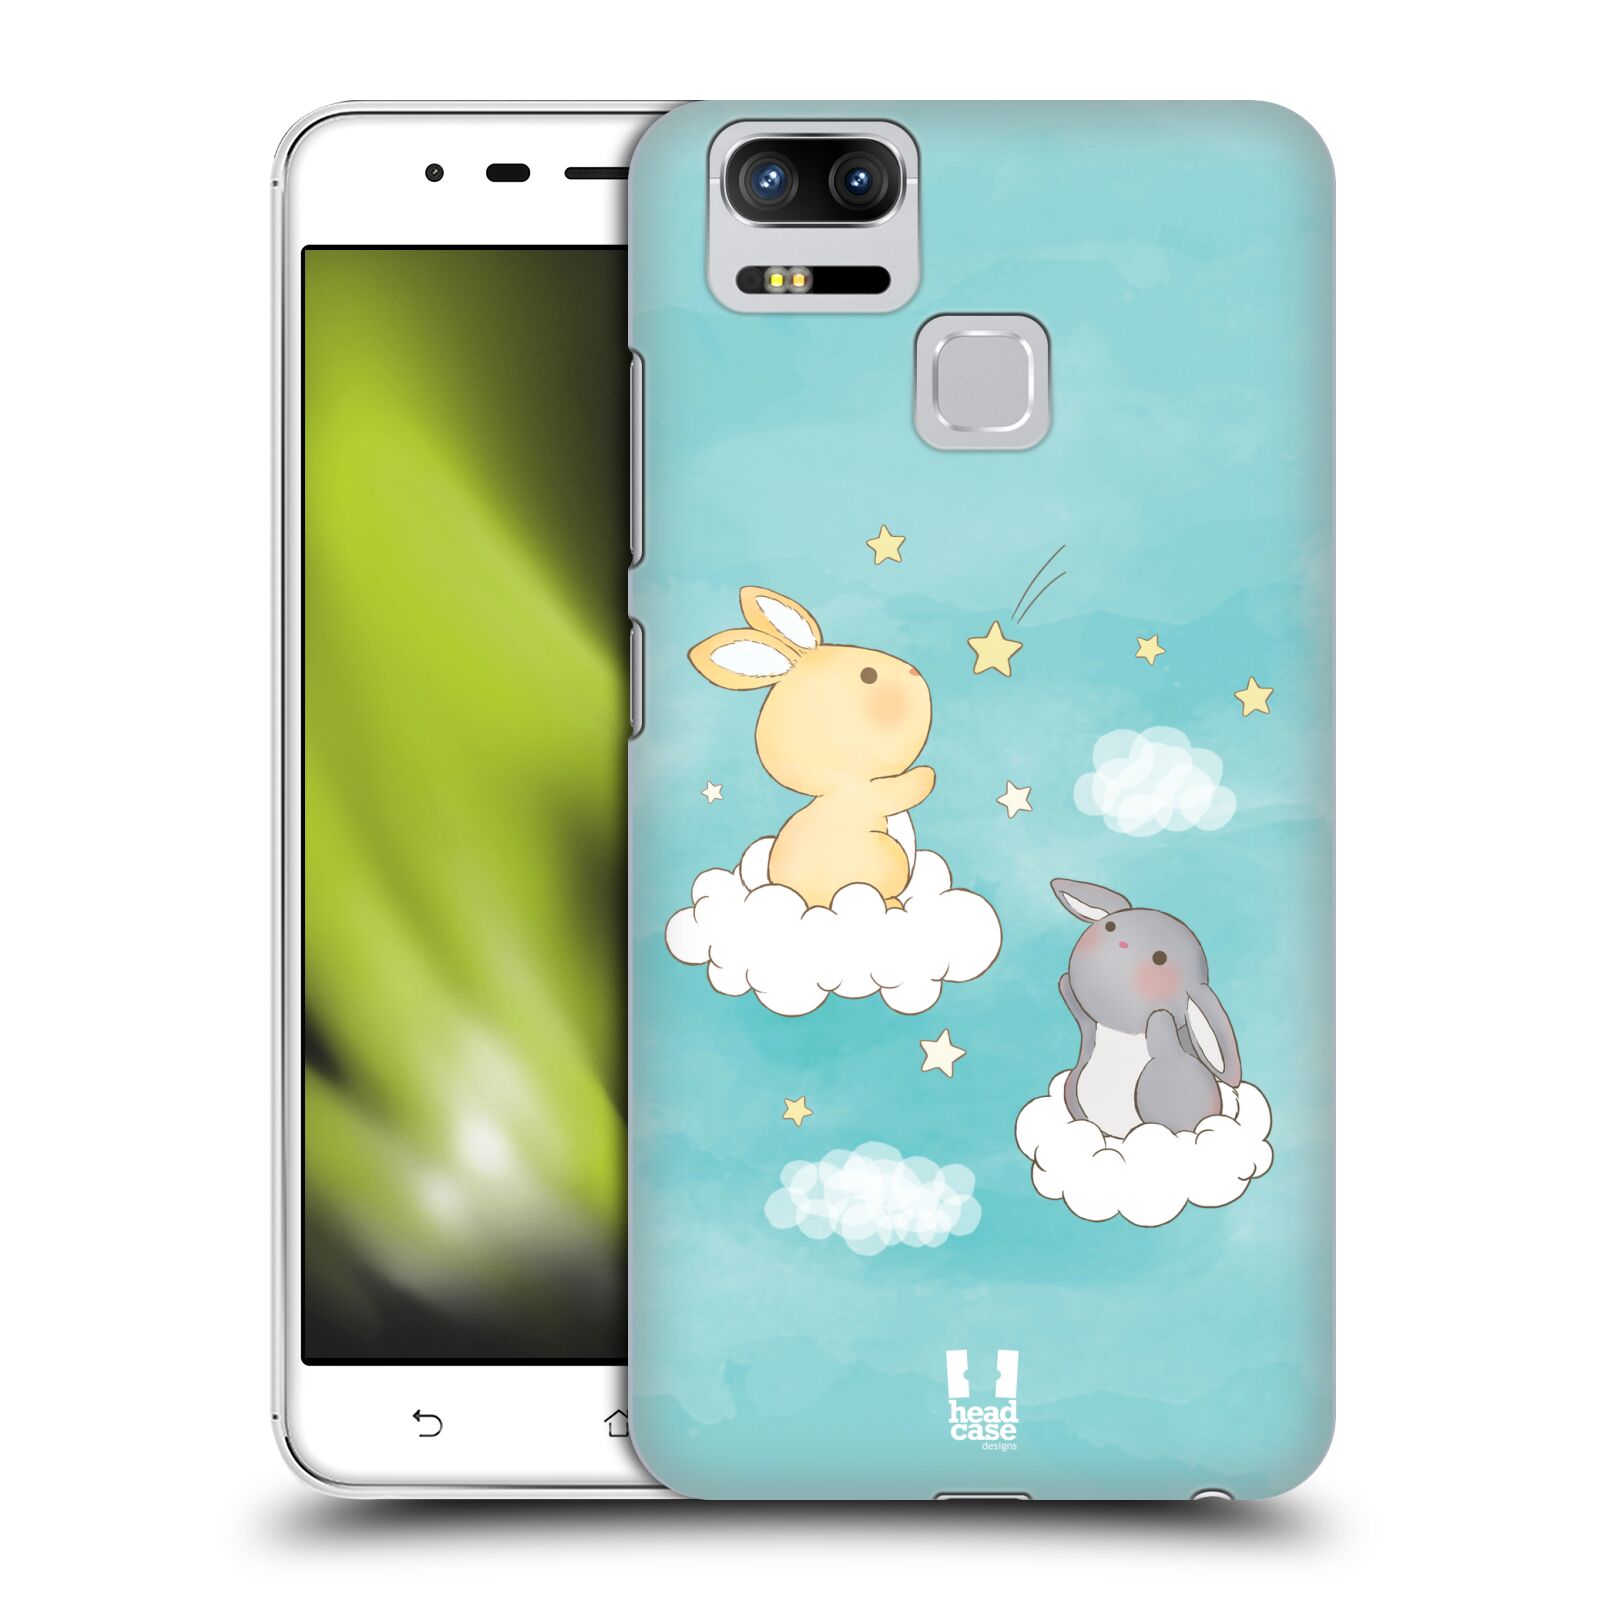 HEAD CASE plastový obal na mobil Asus Zenfone 3 Zoom ZE553KL vzor králíček a hvězdy modrá